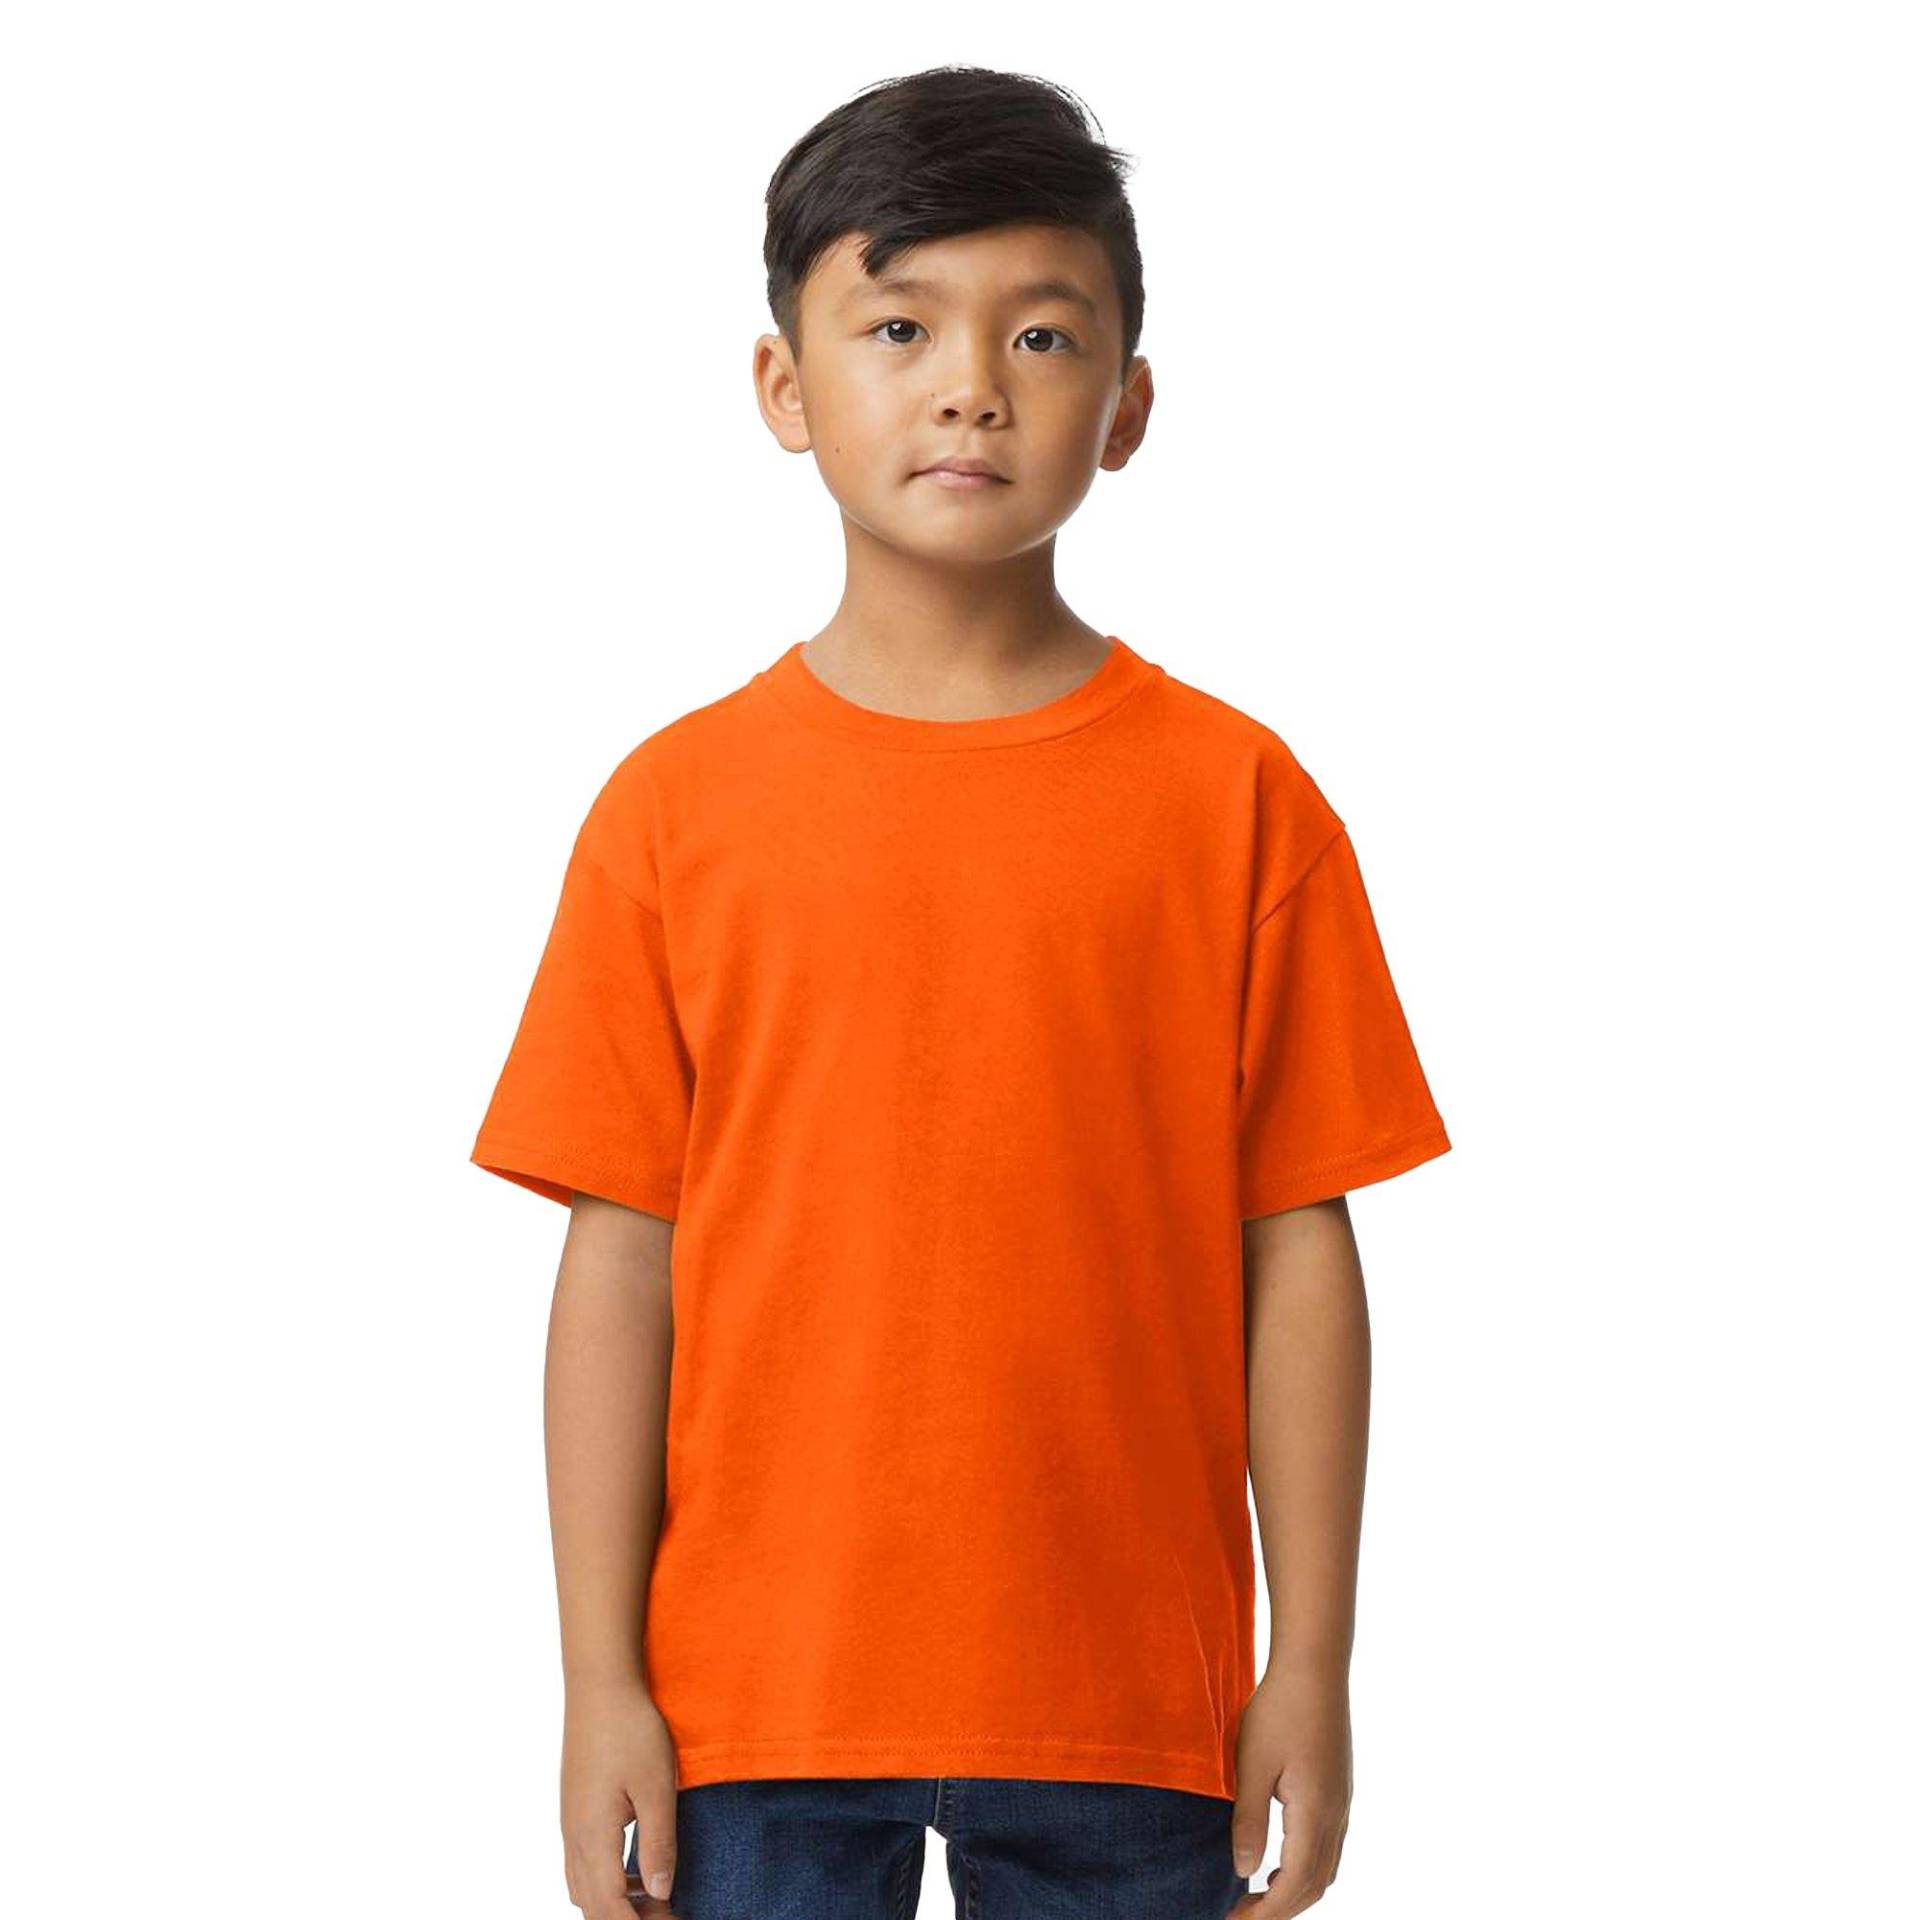 Tshirt Weiche Haptik Mädchen Orange 128 von Gildan